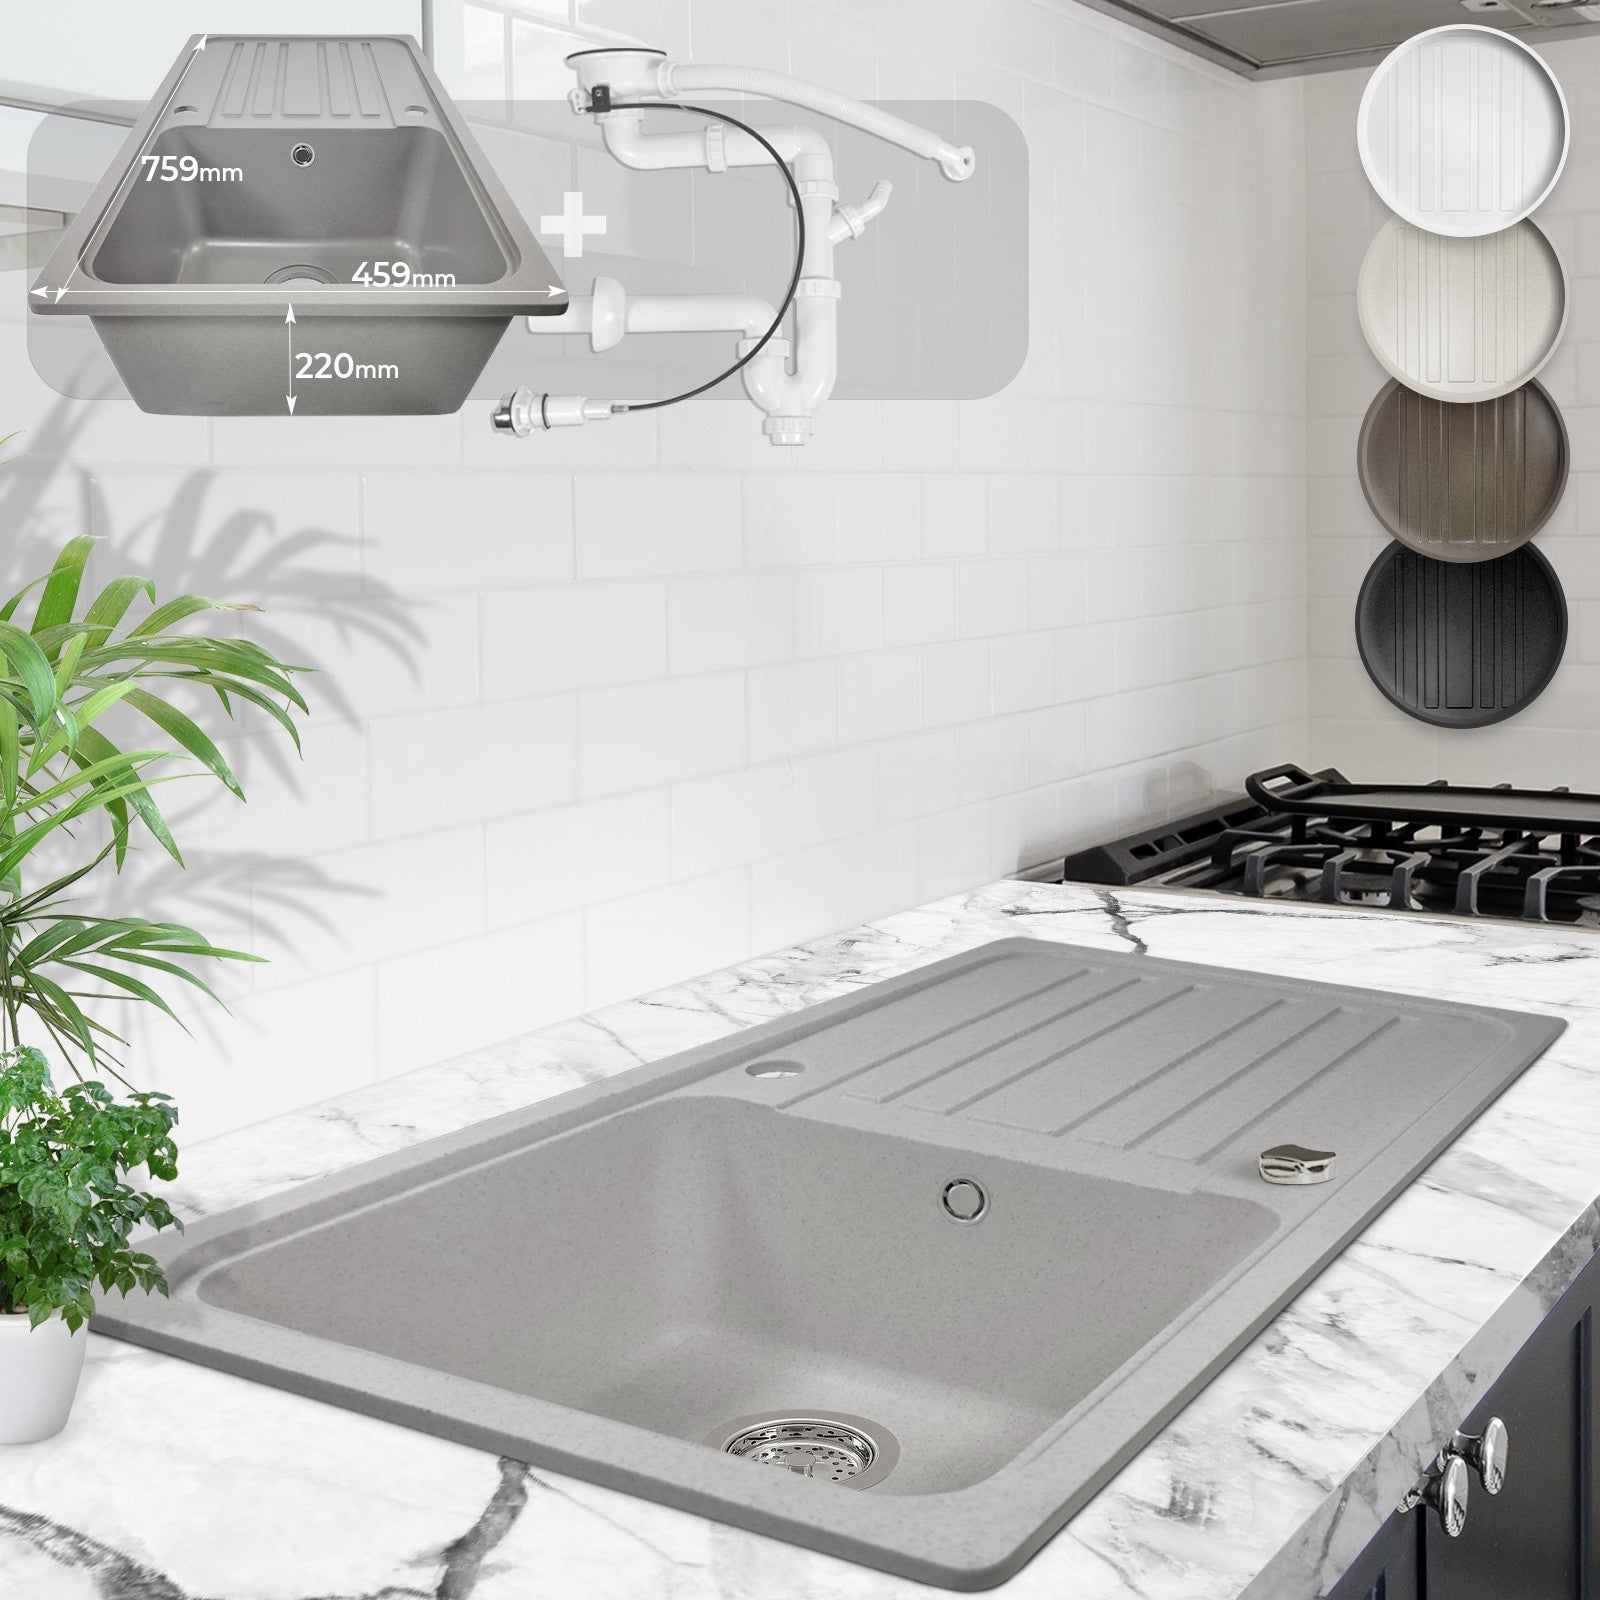 Billede af Køkkenvask i granit m/ afløb, vendbart afløb, rektangulært, vendbart, plettet, grå